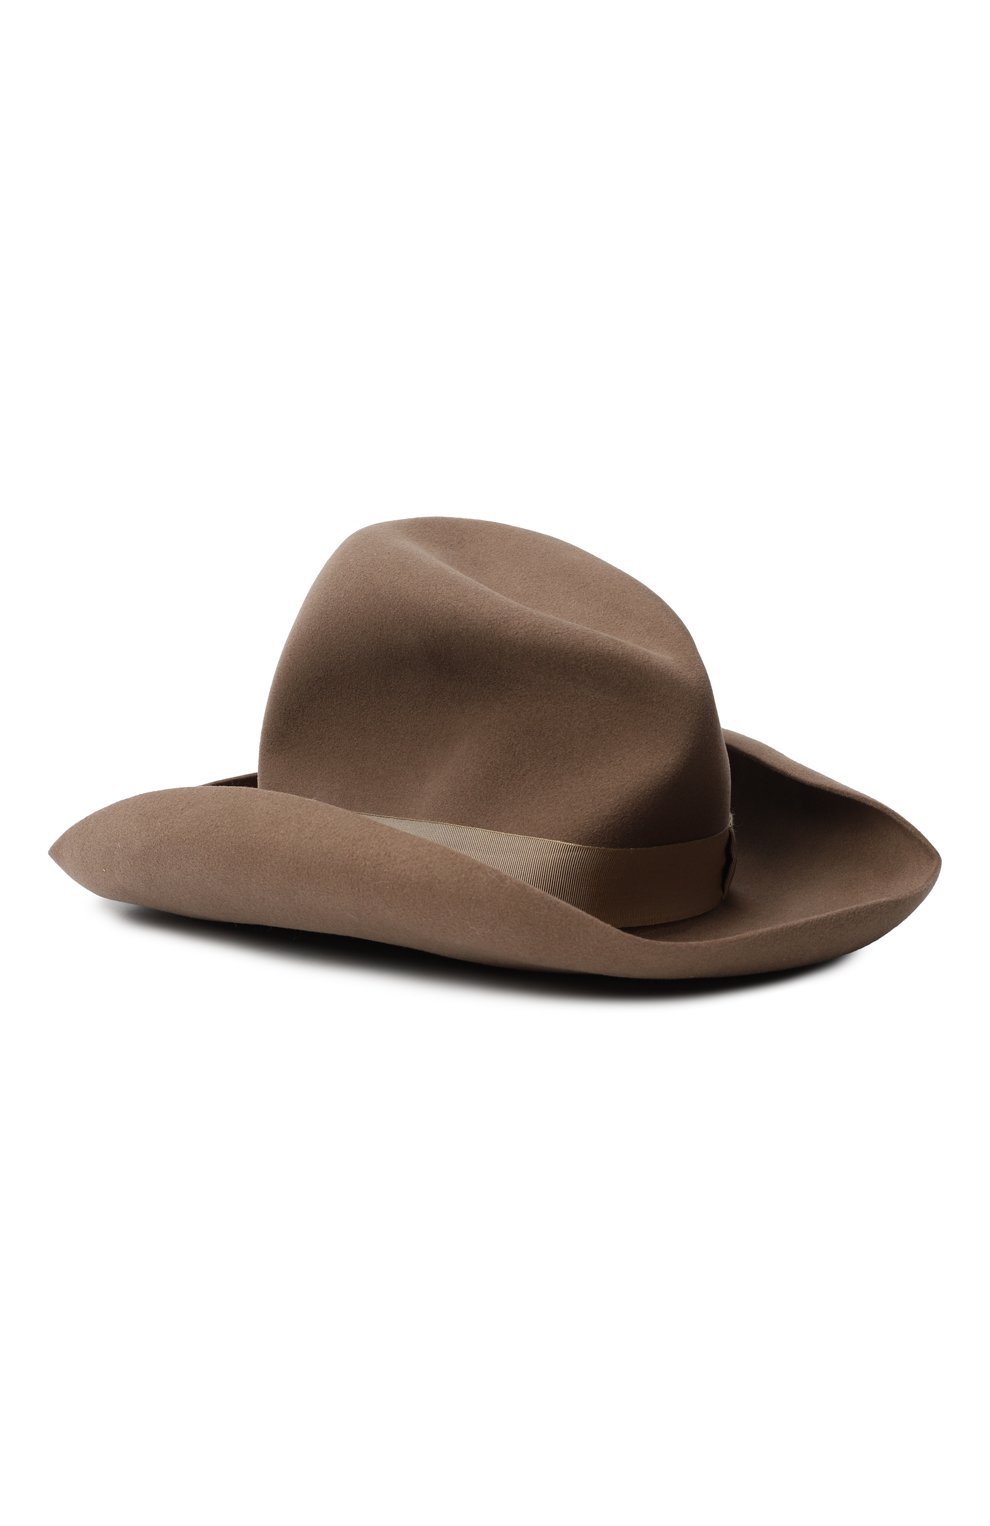 Фетровая шляпа | Ralph Lauren | Коричневый - 2